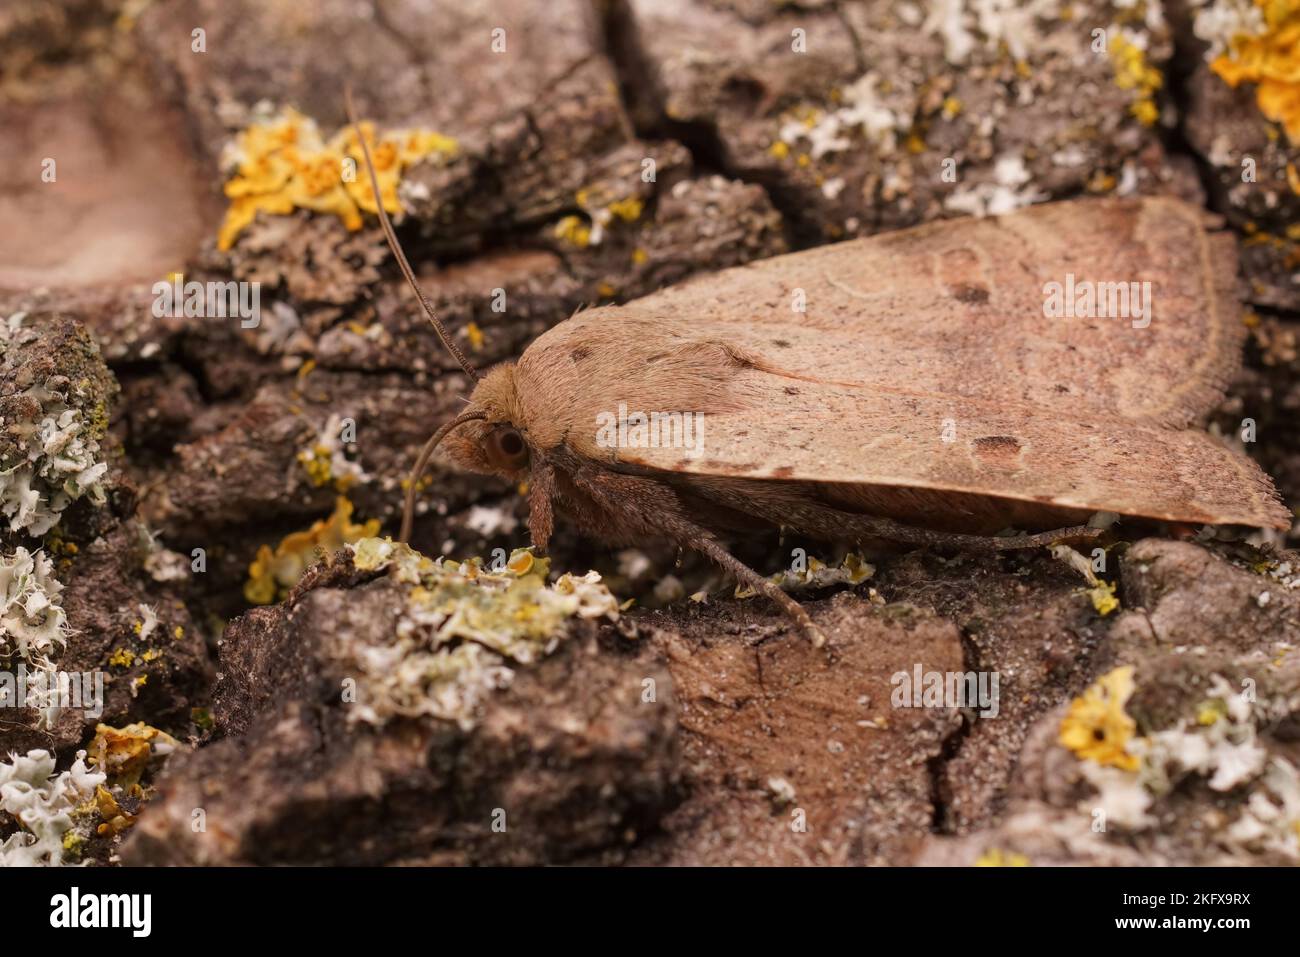 Dettaglio del sottobosco giallo minore, Noctua si presenta su un pezzo di legno verde bugnoso Foto Stock